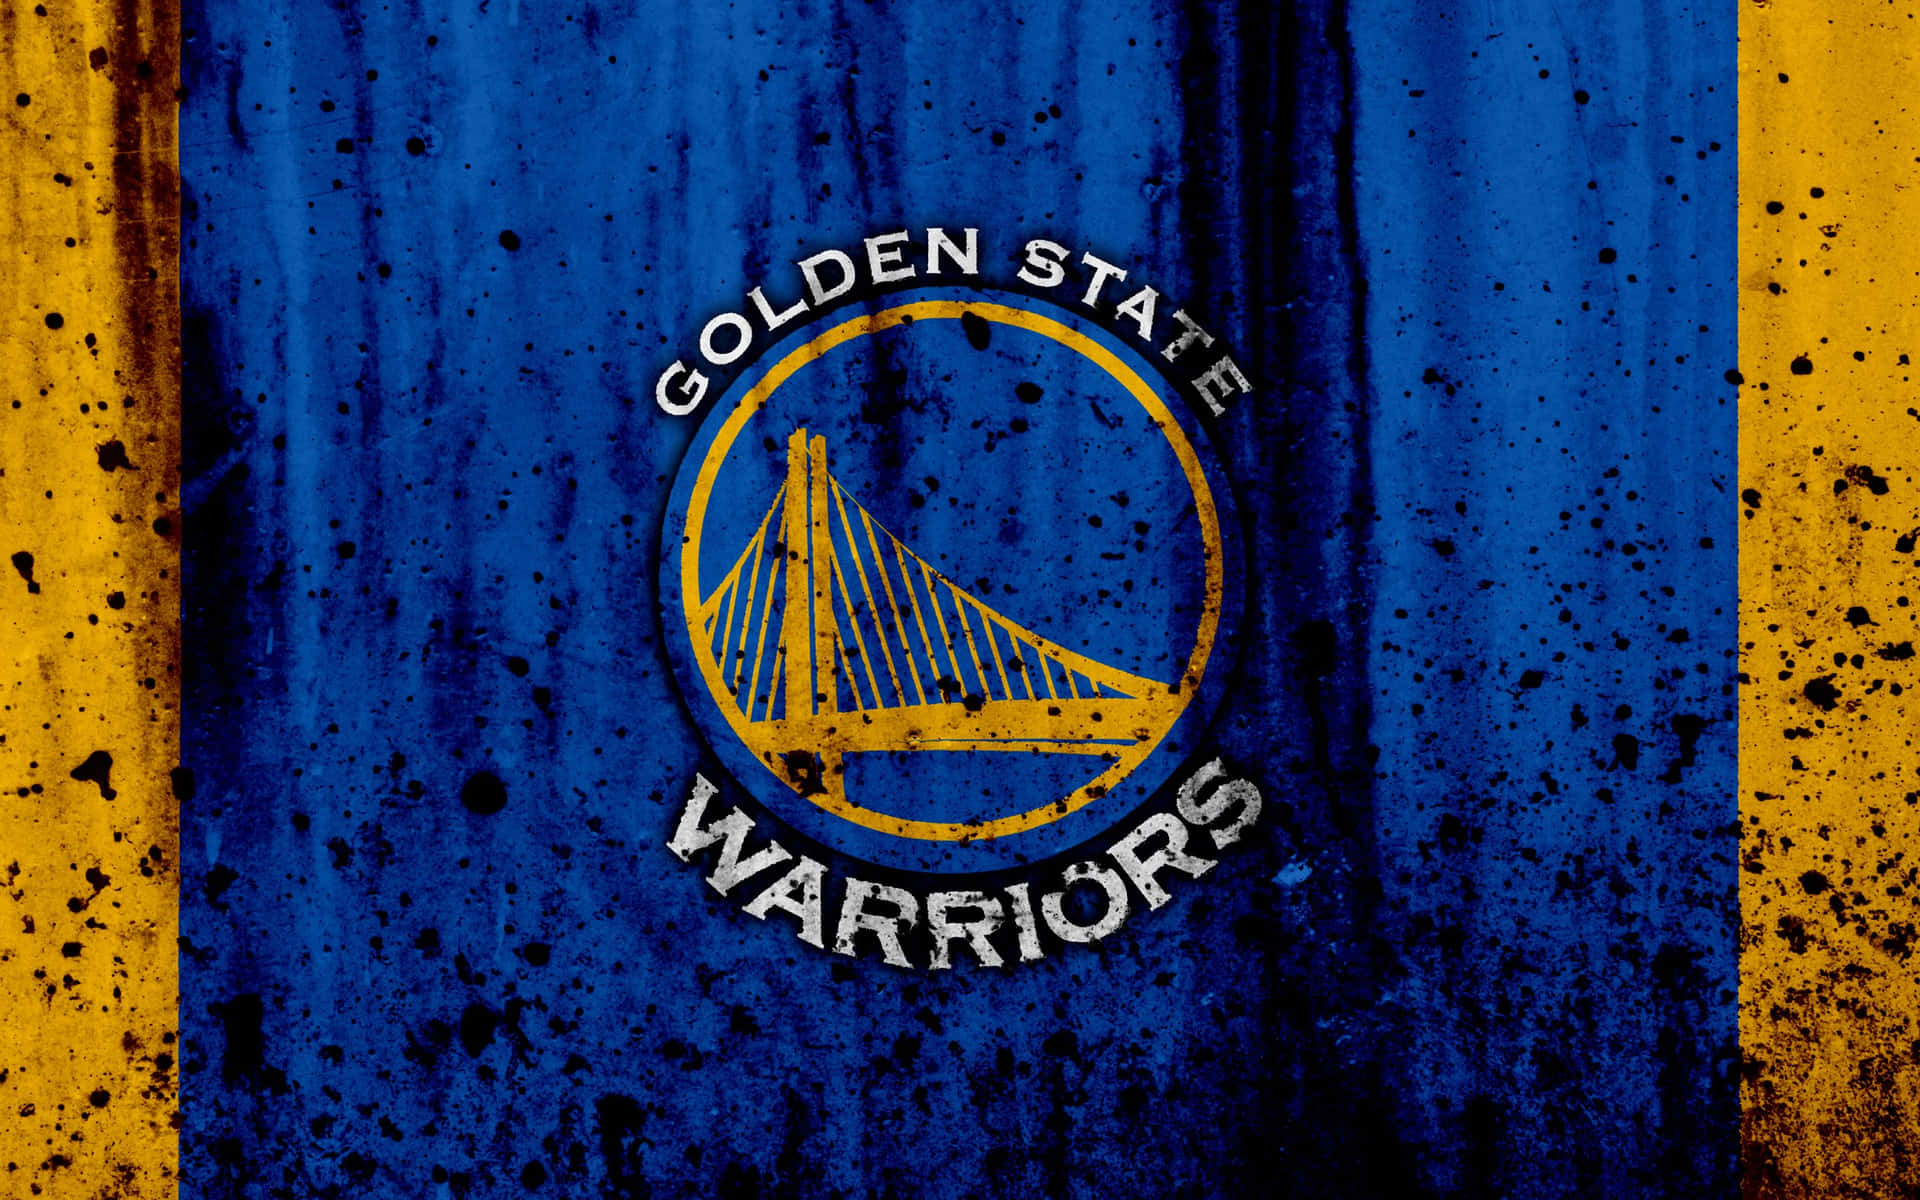 Goldenstate Warriors-logo Mit Schwarzem Farbspritzern Wallpaper